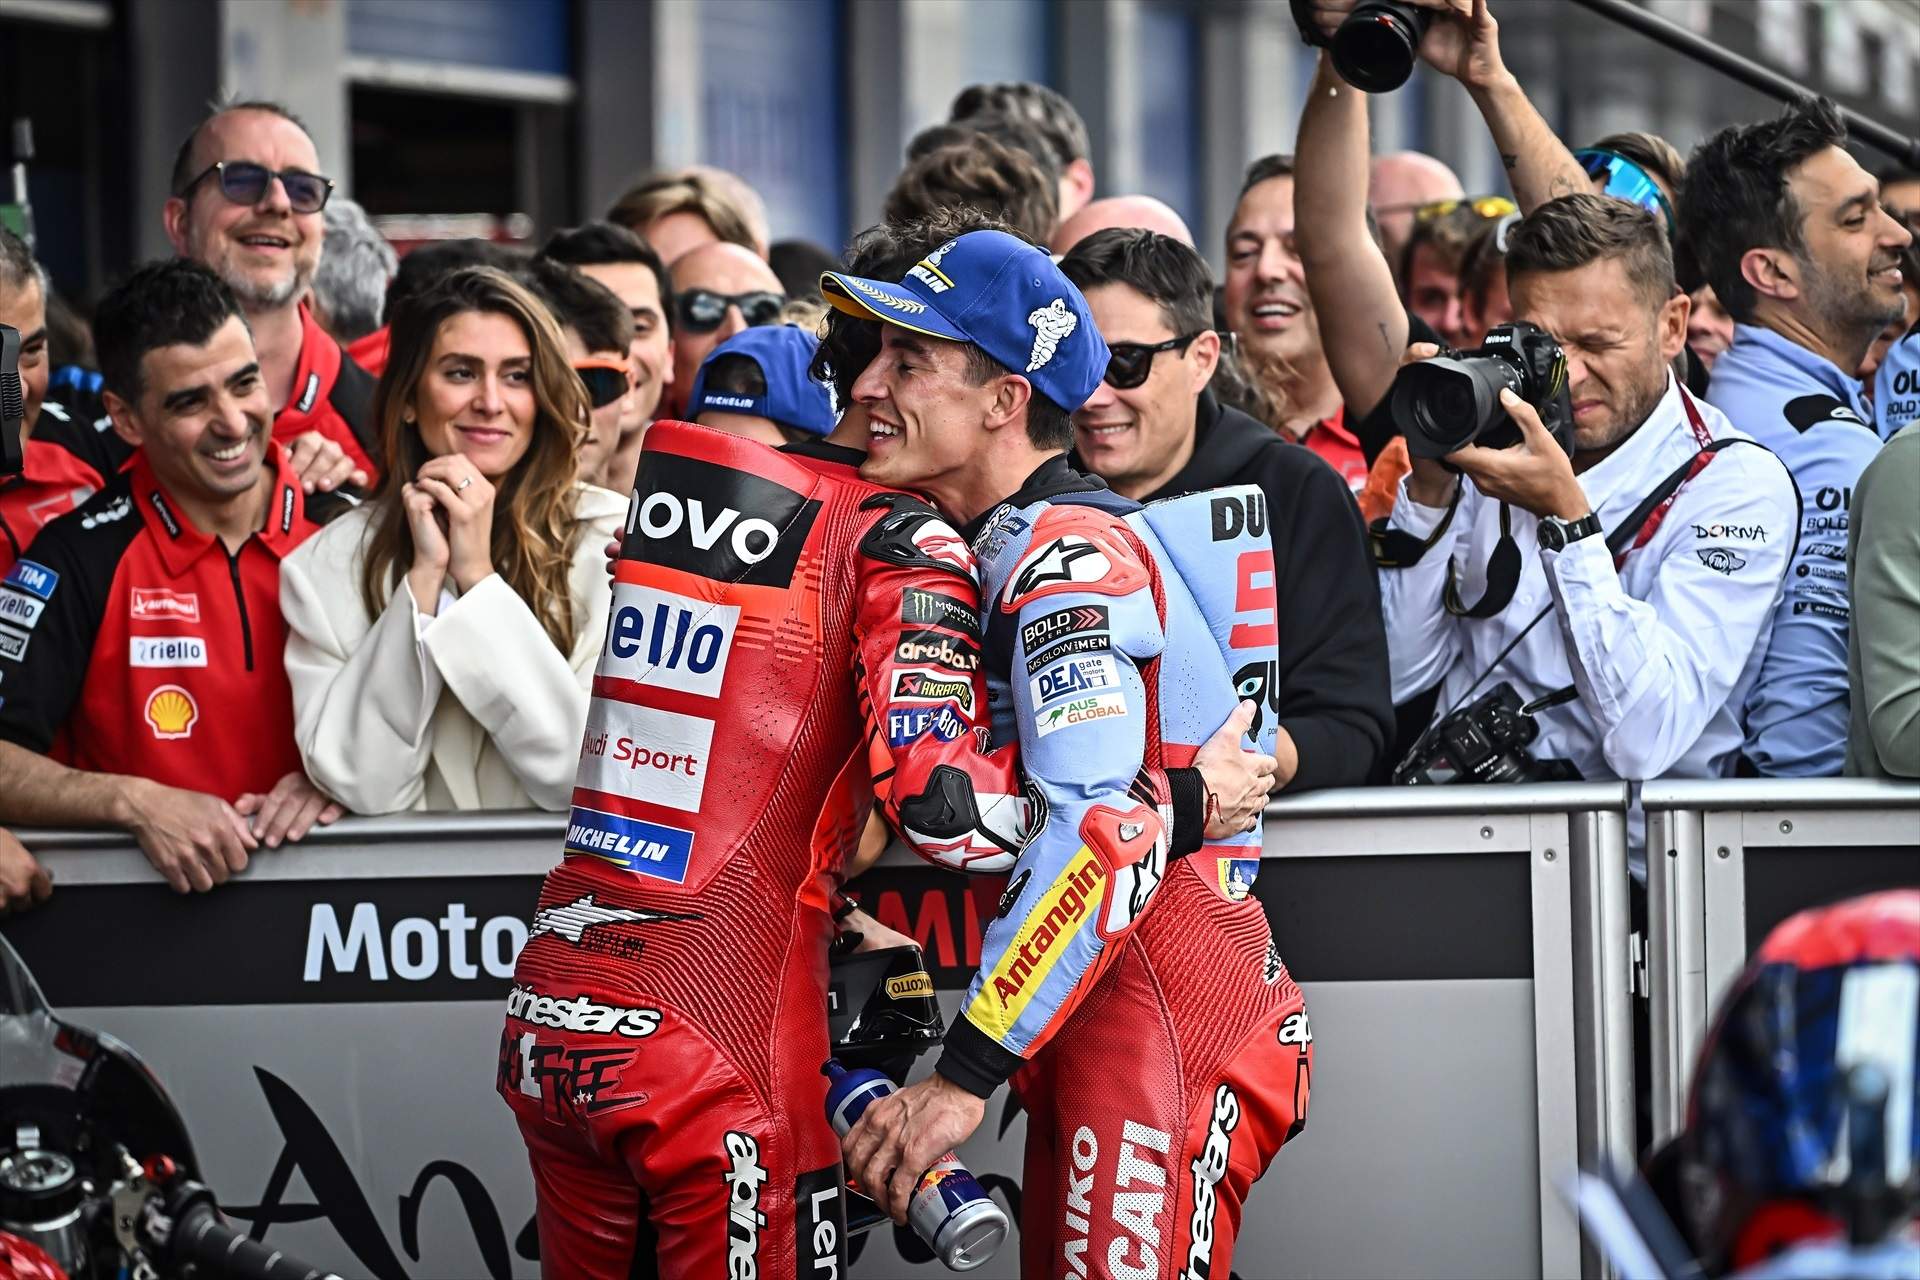 Destapada la jugada de Ducati amb Marc Márquez, 2 traïcions